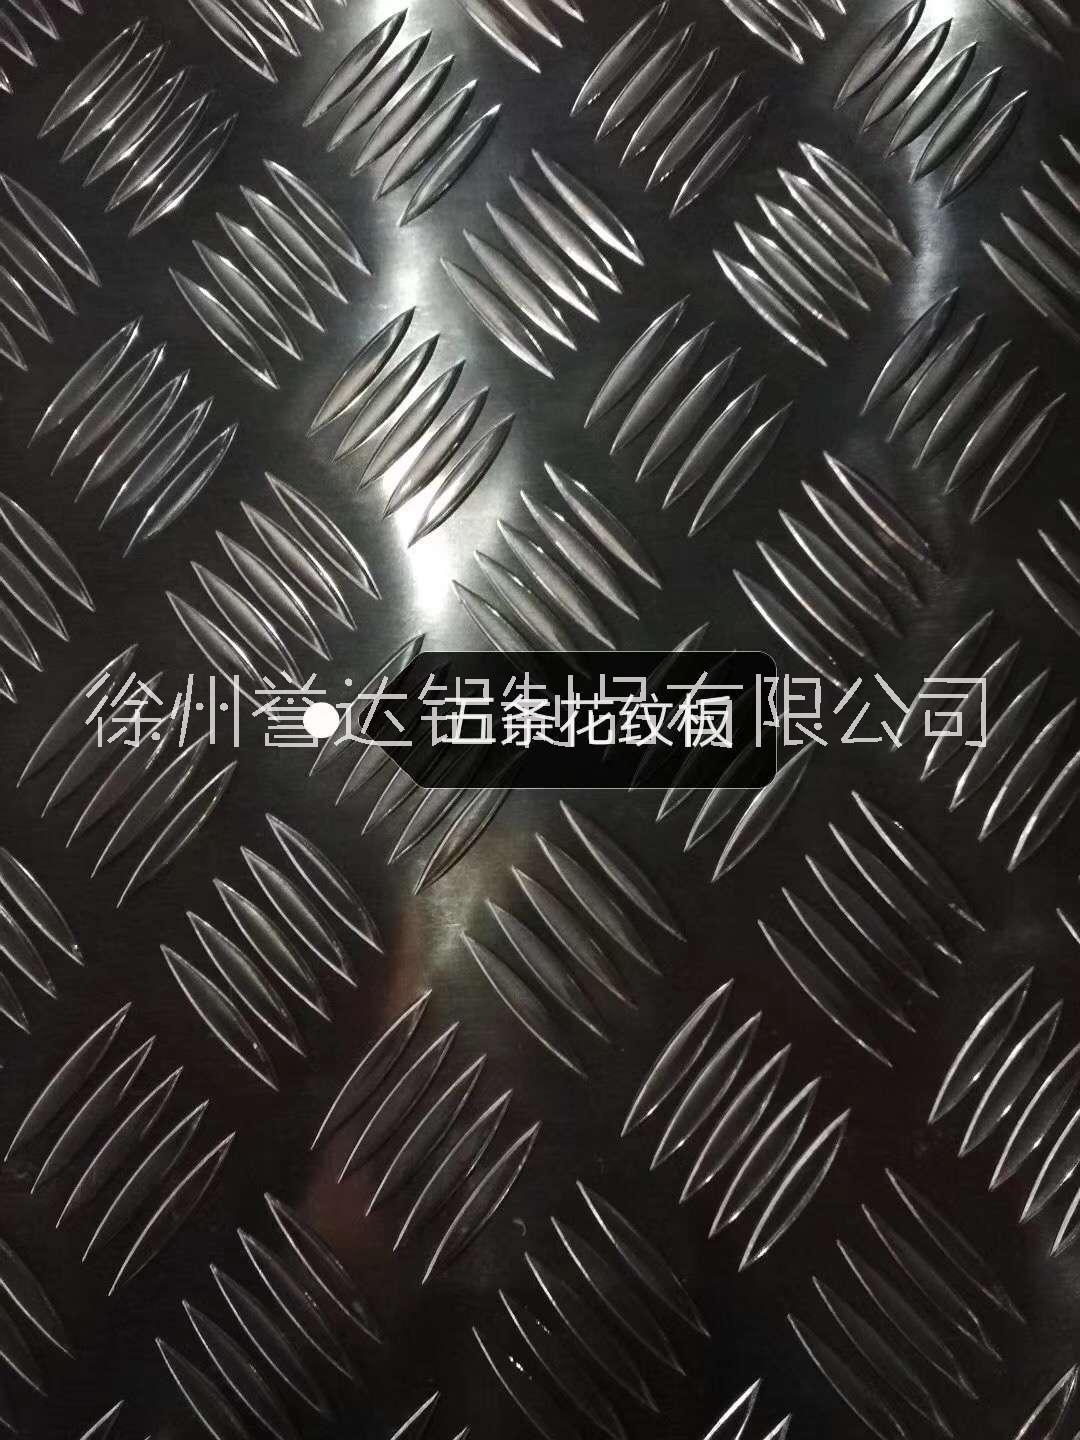 江苏，防滑花纹铝板加工定制18000元/吨徐州誉达厂家直销， 江苏花纹铝板图片